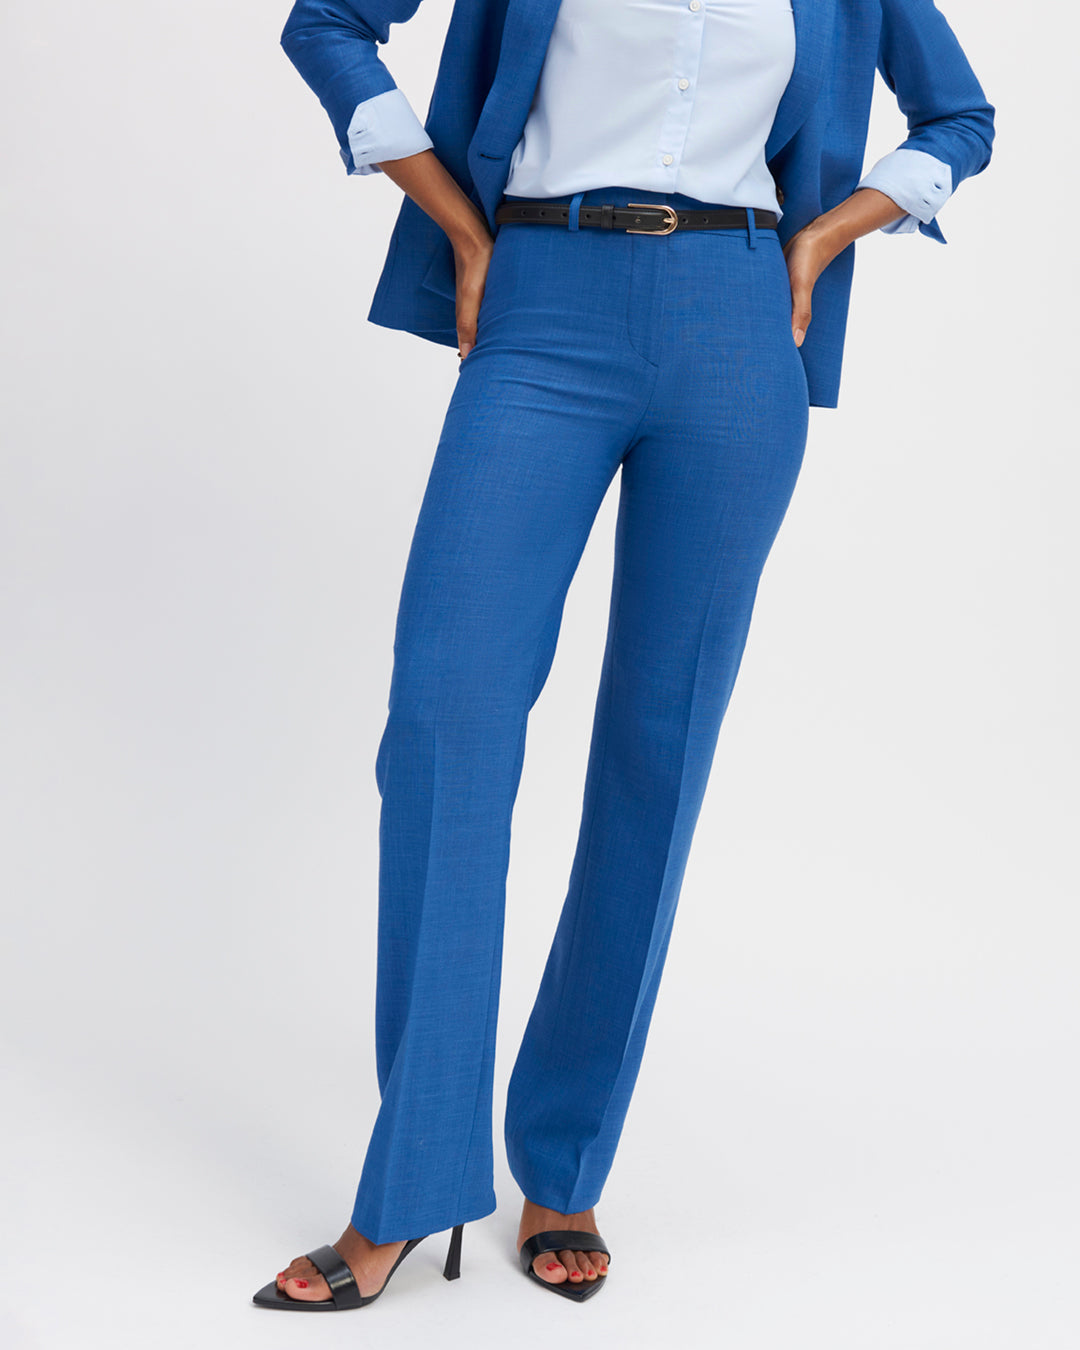 pantalon-bleu-azur-coupe-droite-taille-haute-plis-devant-fermeture-zip-avec-crochet-17H10-tailleurs-pour-femme-paris-